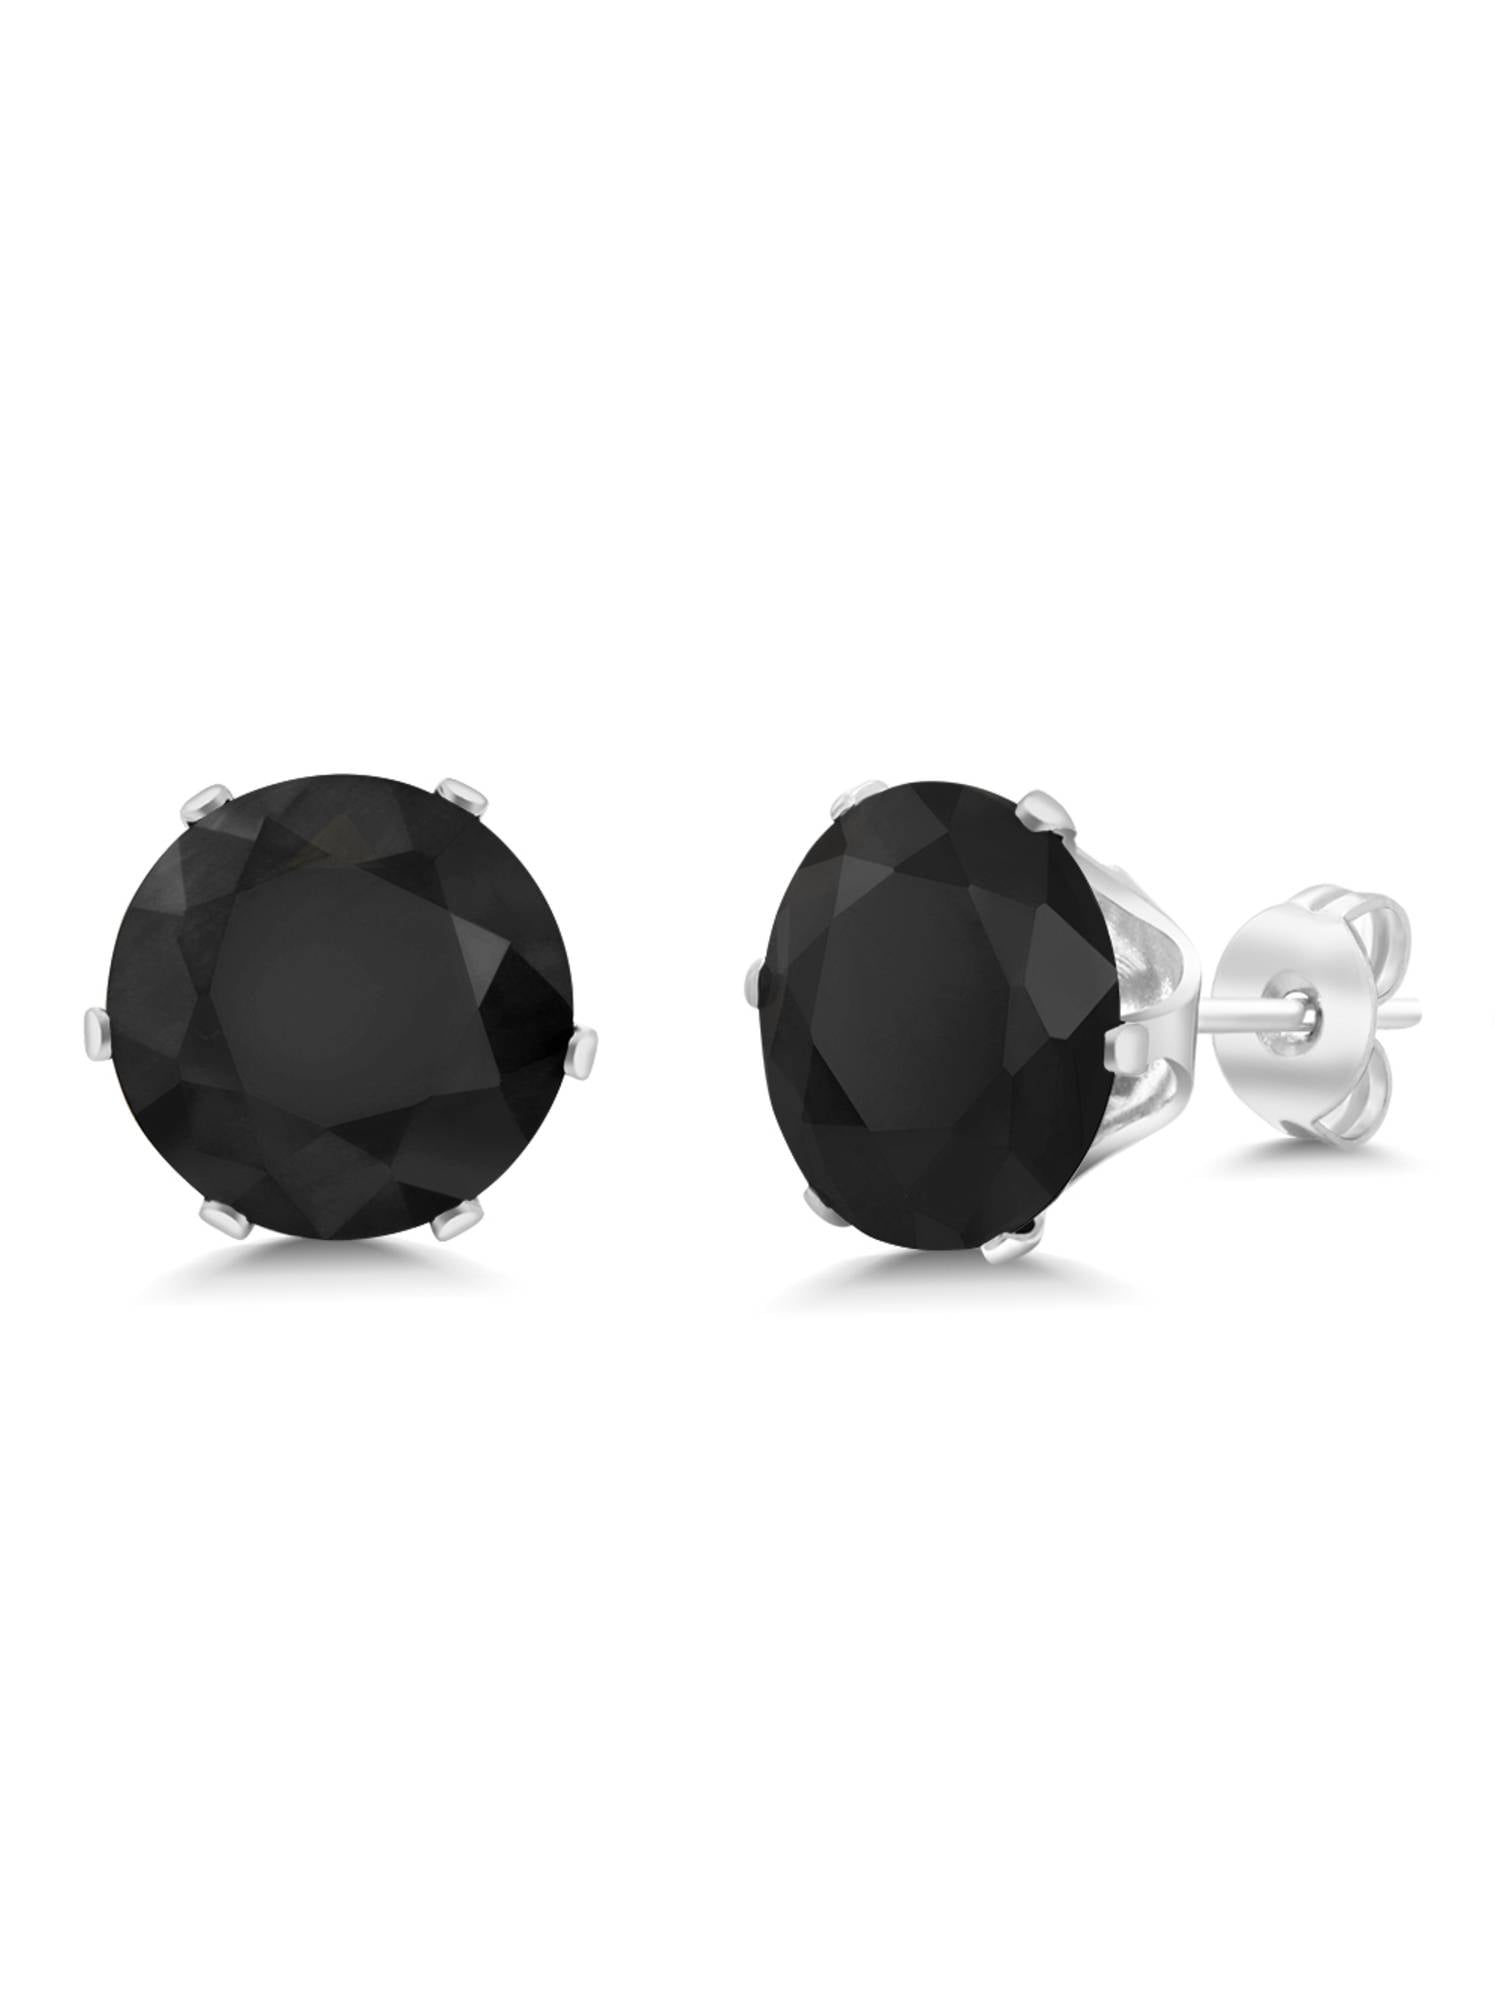 Gem Stone King 5.50 Ct Big 10MM Black Round Onyx Gemstone Birthstone Stud Earring